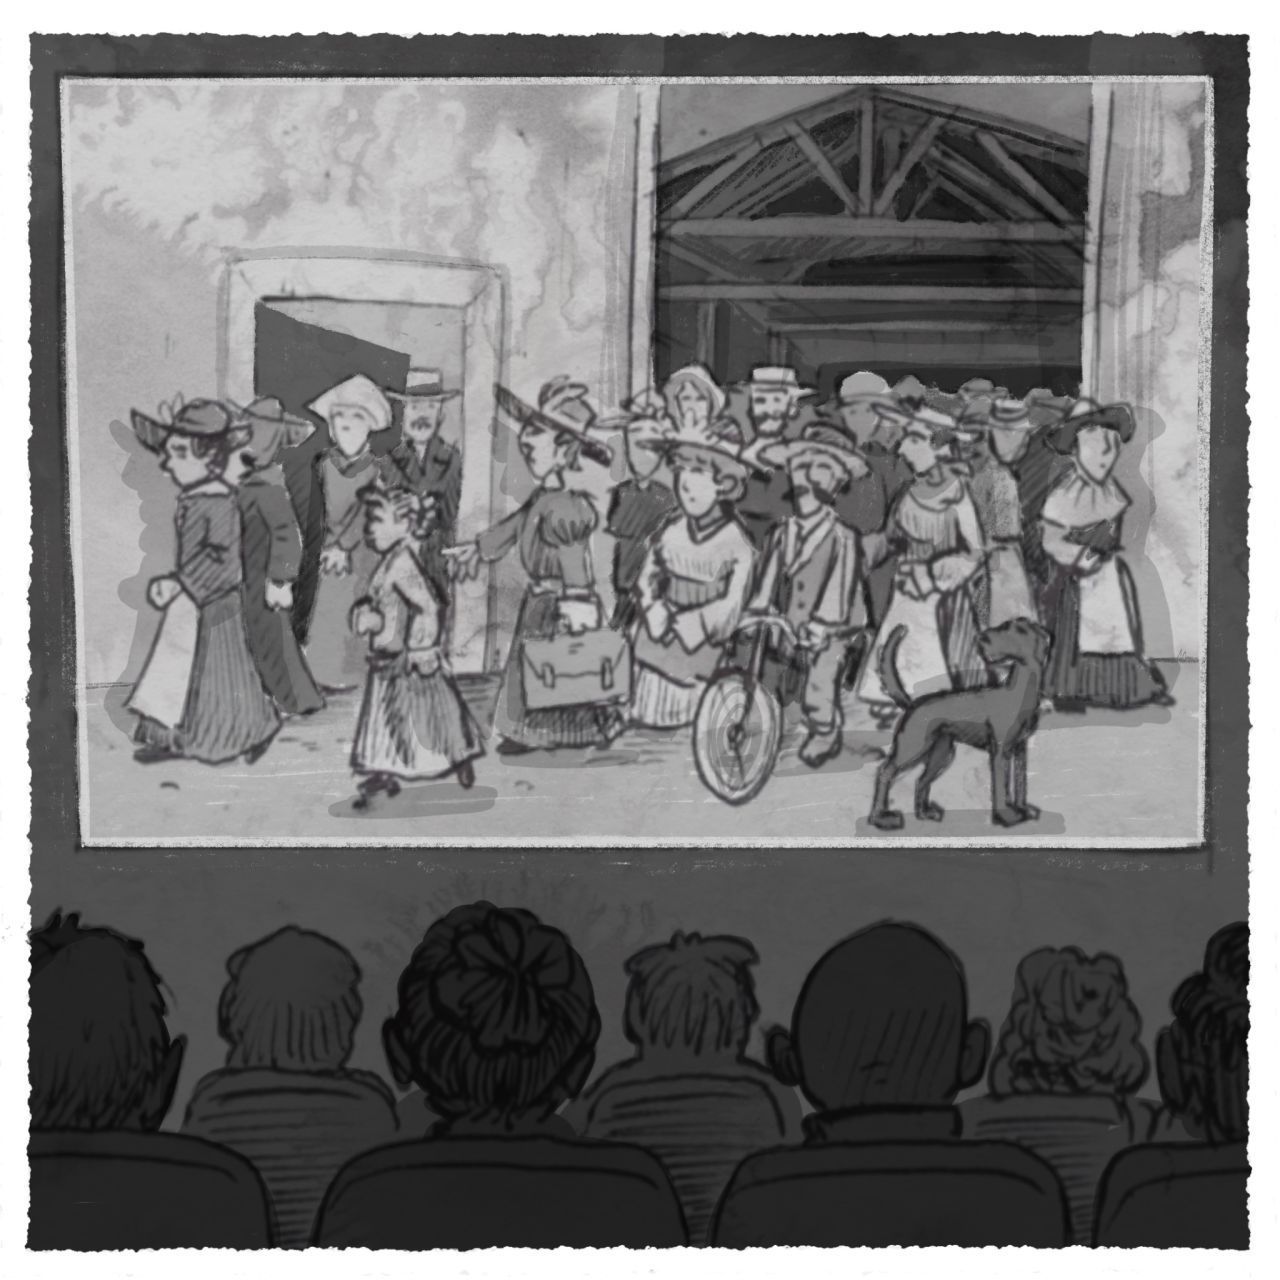 Der erste Film im Kino: Arbeiter verlassen die Lumière-Fabrik, natürlich in schwarz-weiß. Die Aufnahmen zeigten das Werkstor, Arbeiter:innen, die das Gelände verließen und einen Hund.